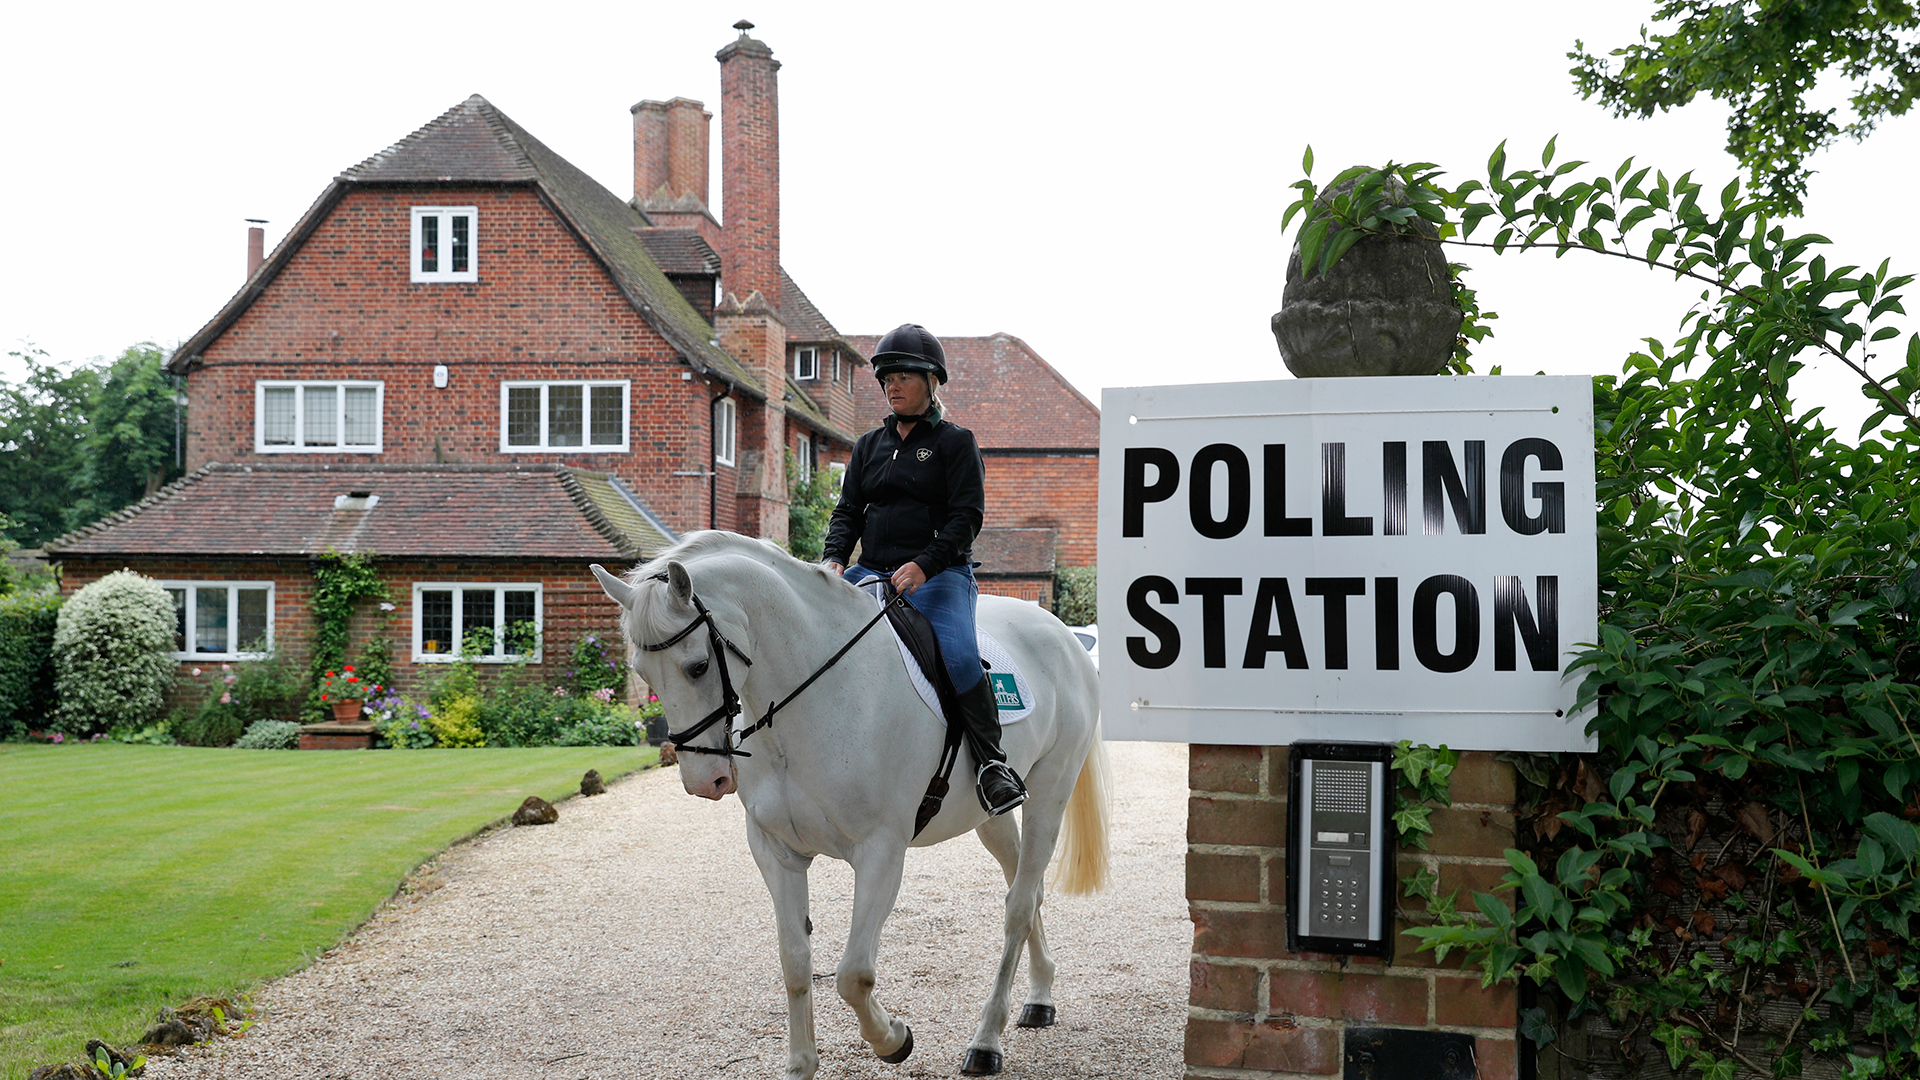 Un pub, un garaje, o una lavandería, así son los centros electorales en Reino Unido 2